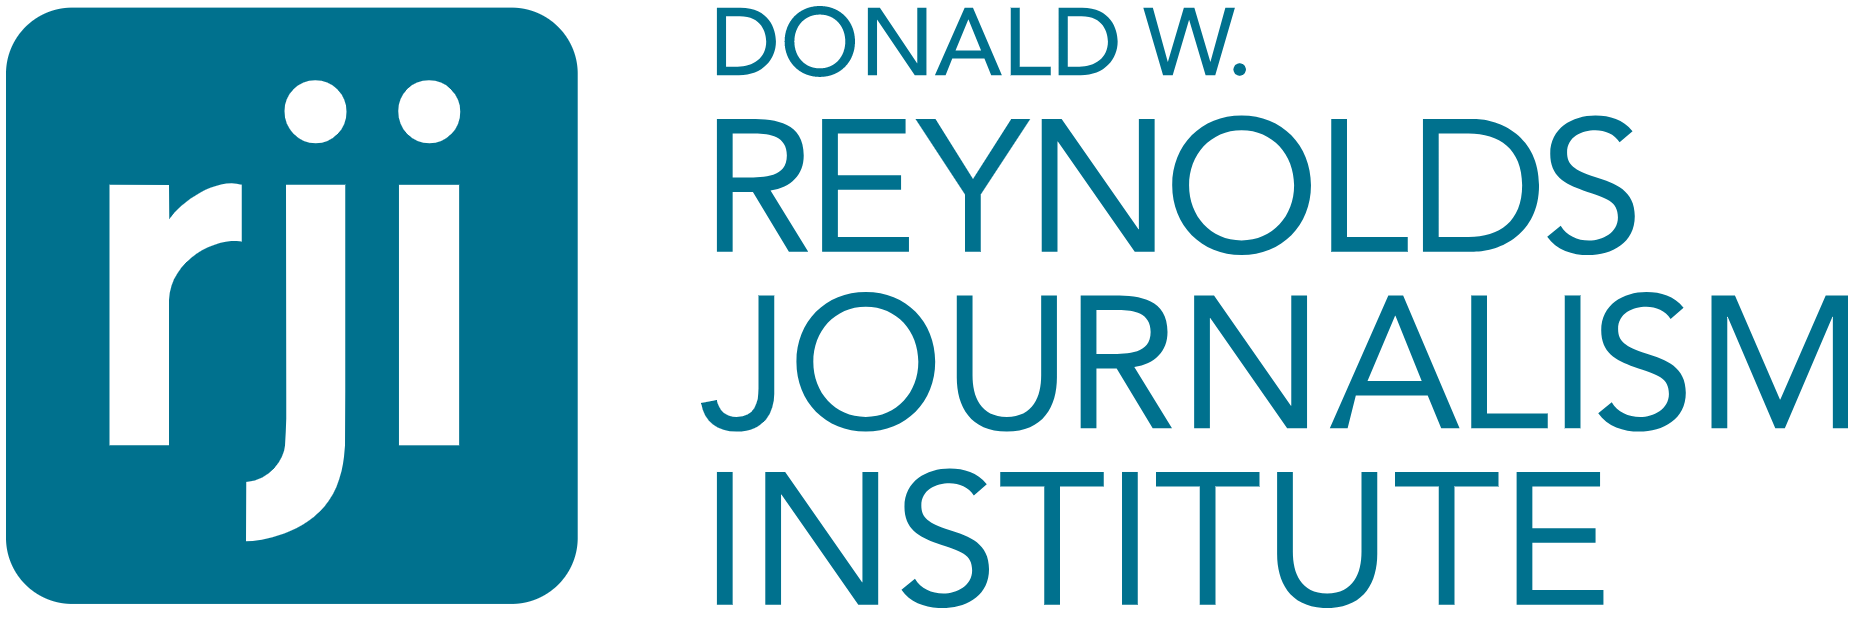 Programme de bourses de l’Institut de journalisme Donald W.Reynolds 2020 (financement disponible)